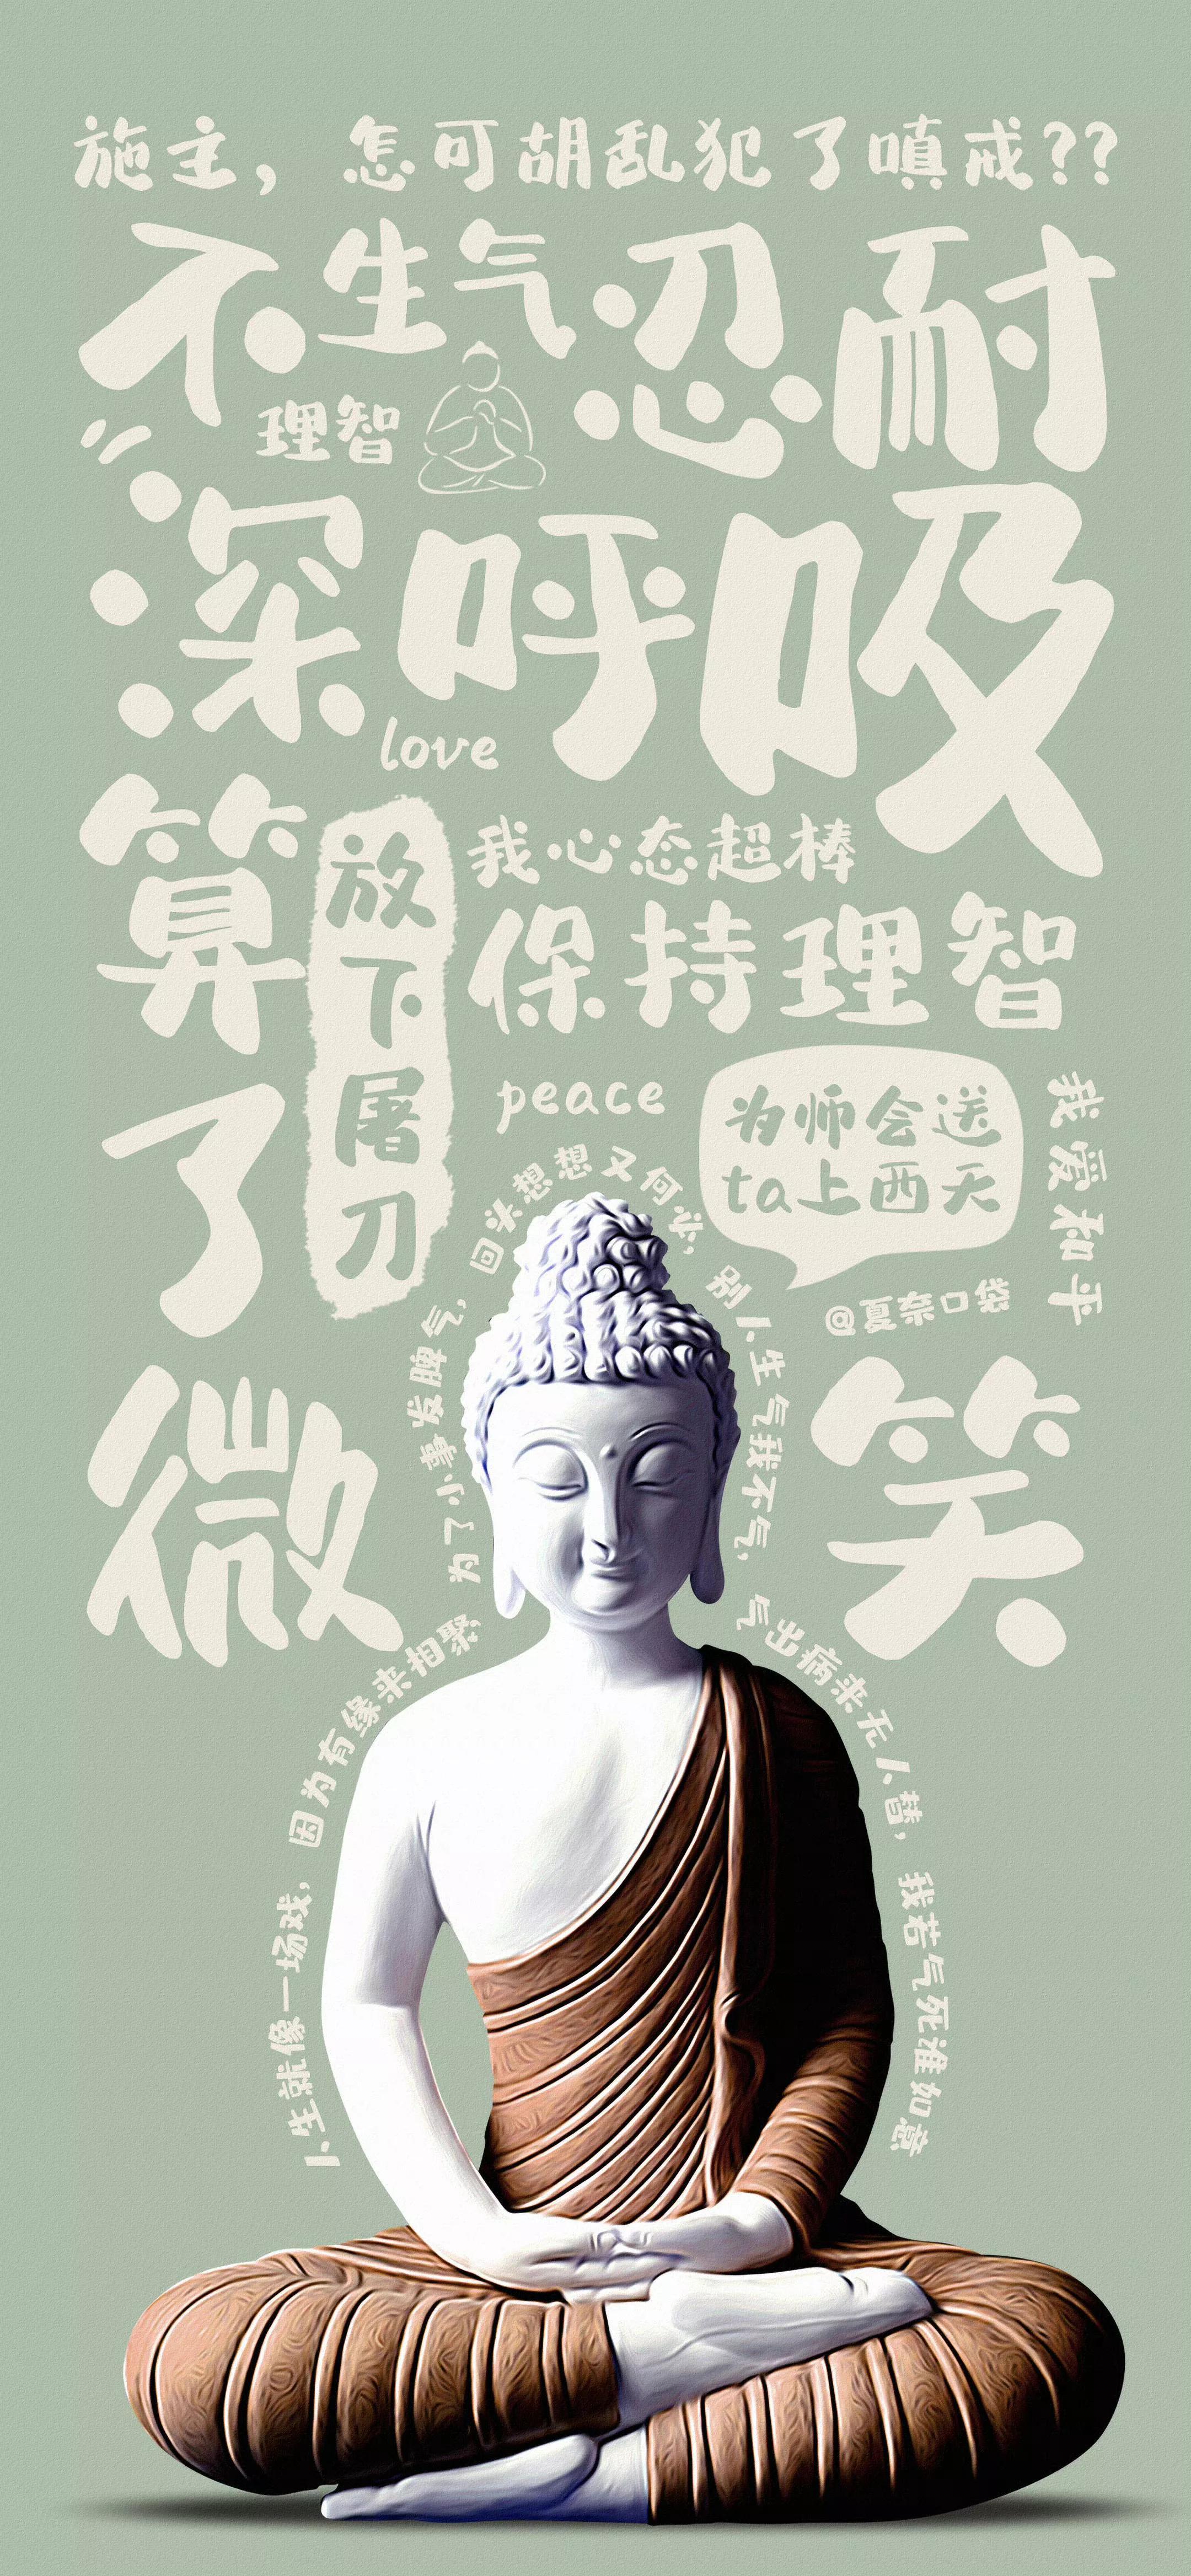 壁纸分享,感受佛系文化,刹那升华,宁静静心